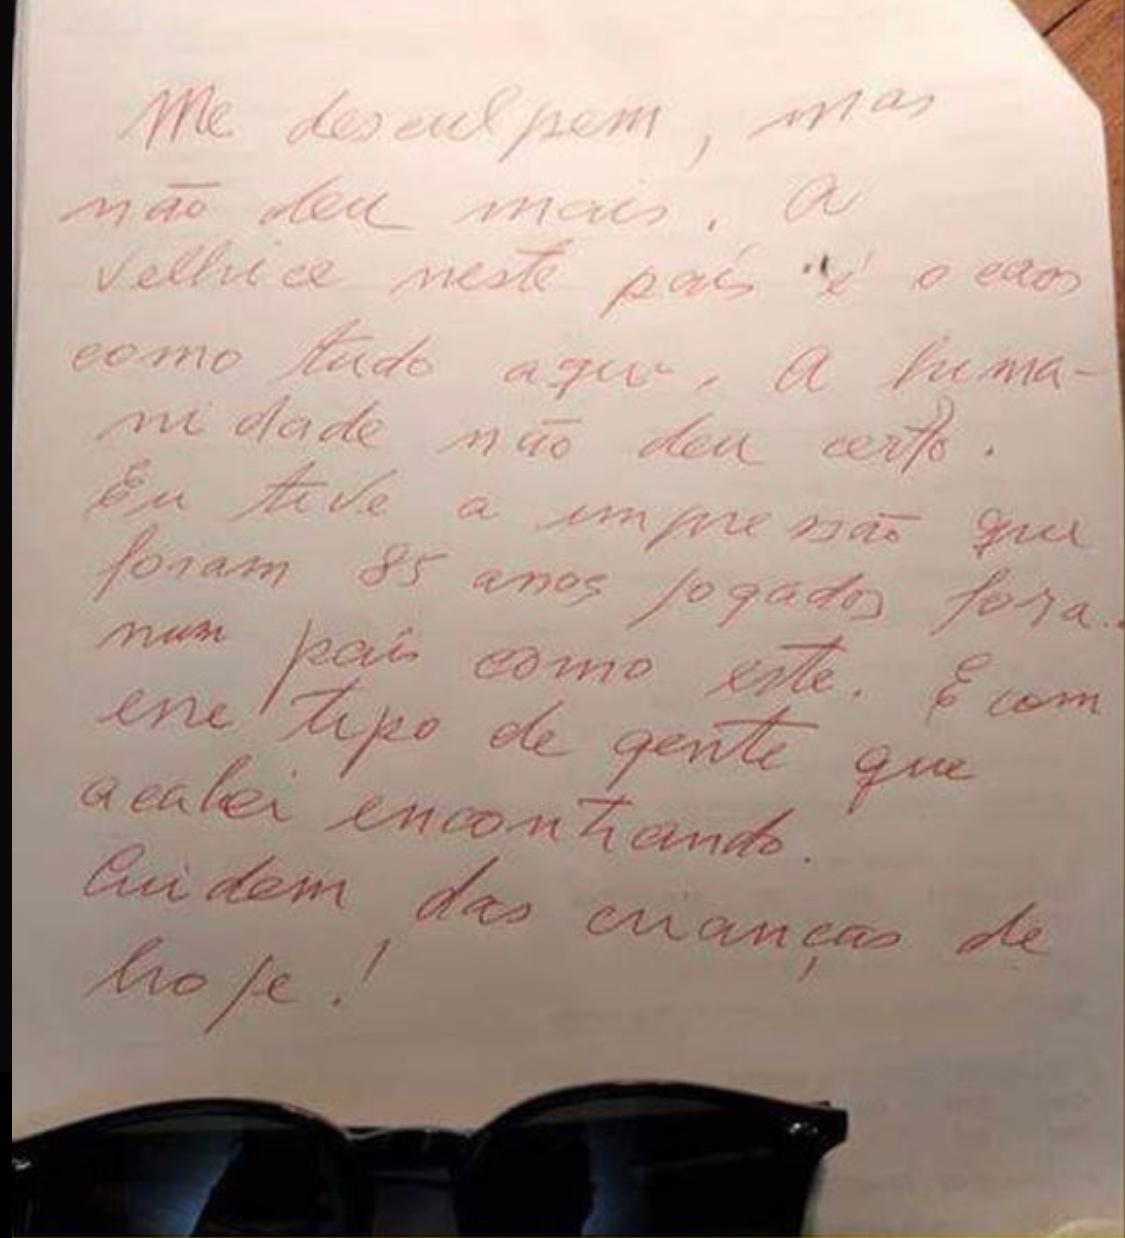 Carta de despedida de Flávio Migliaccio foi divulgada (Foto: Reprodução/WhatsApp)